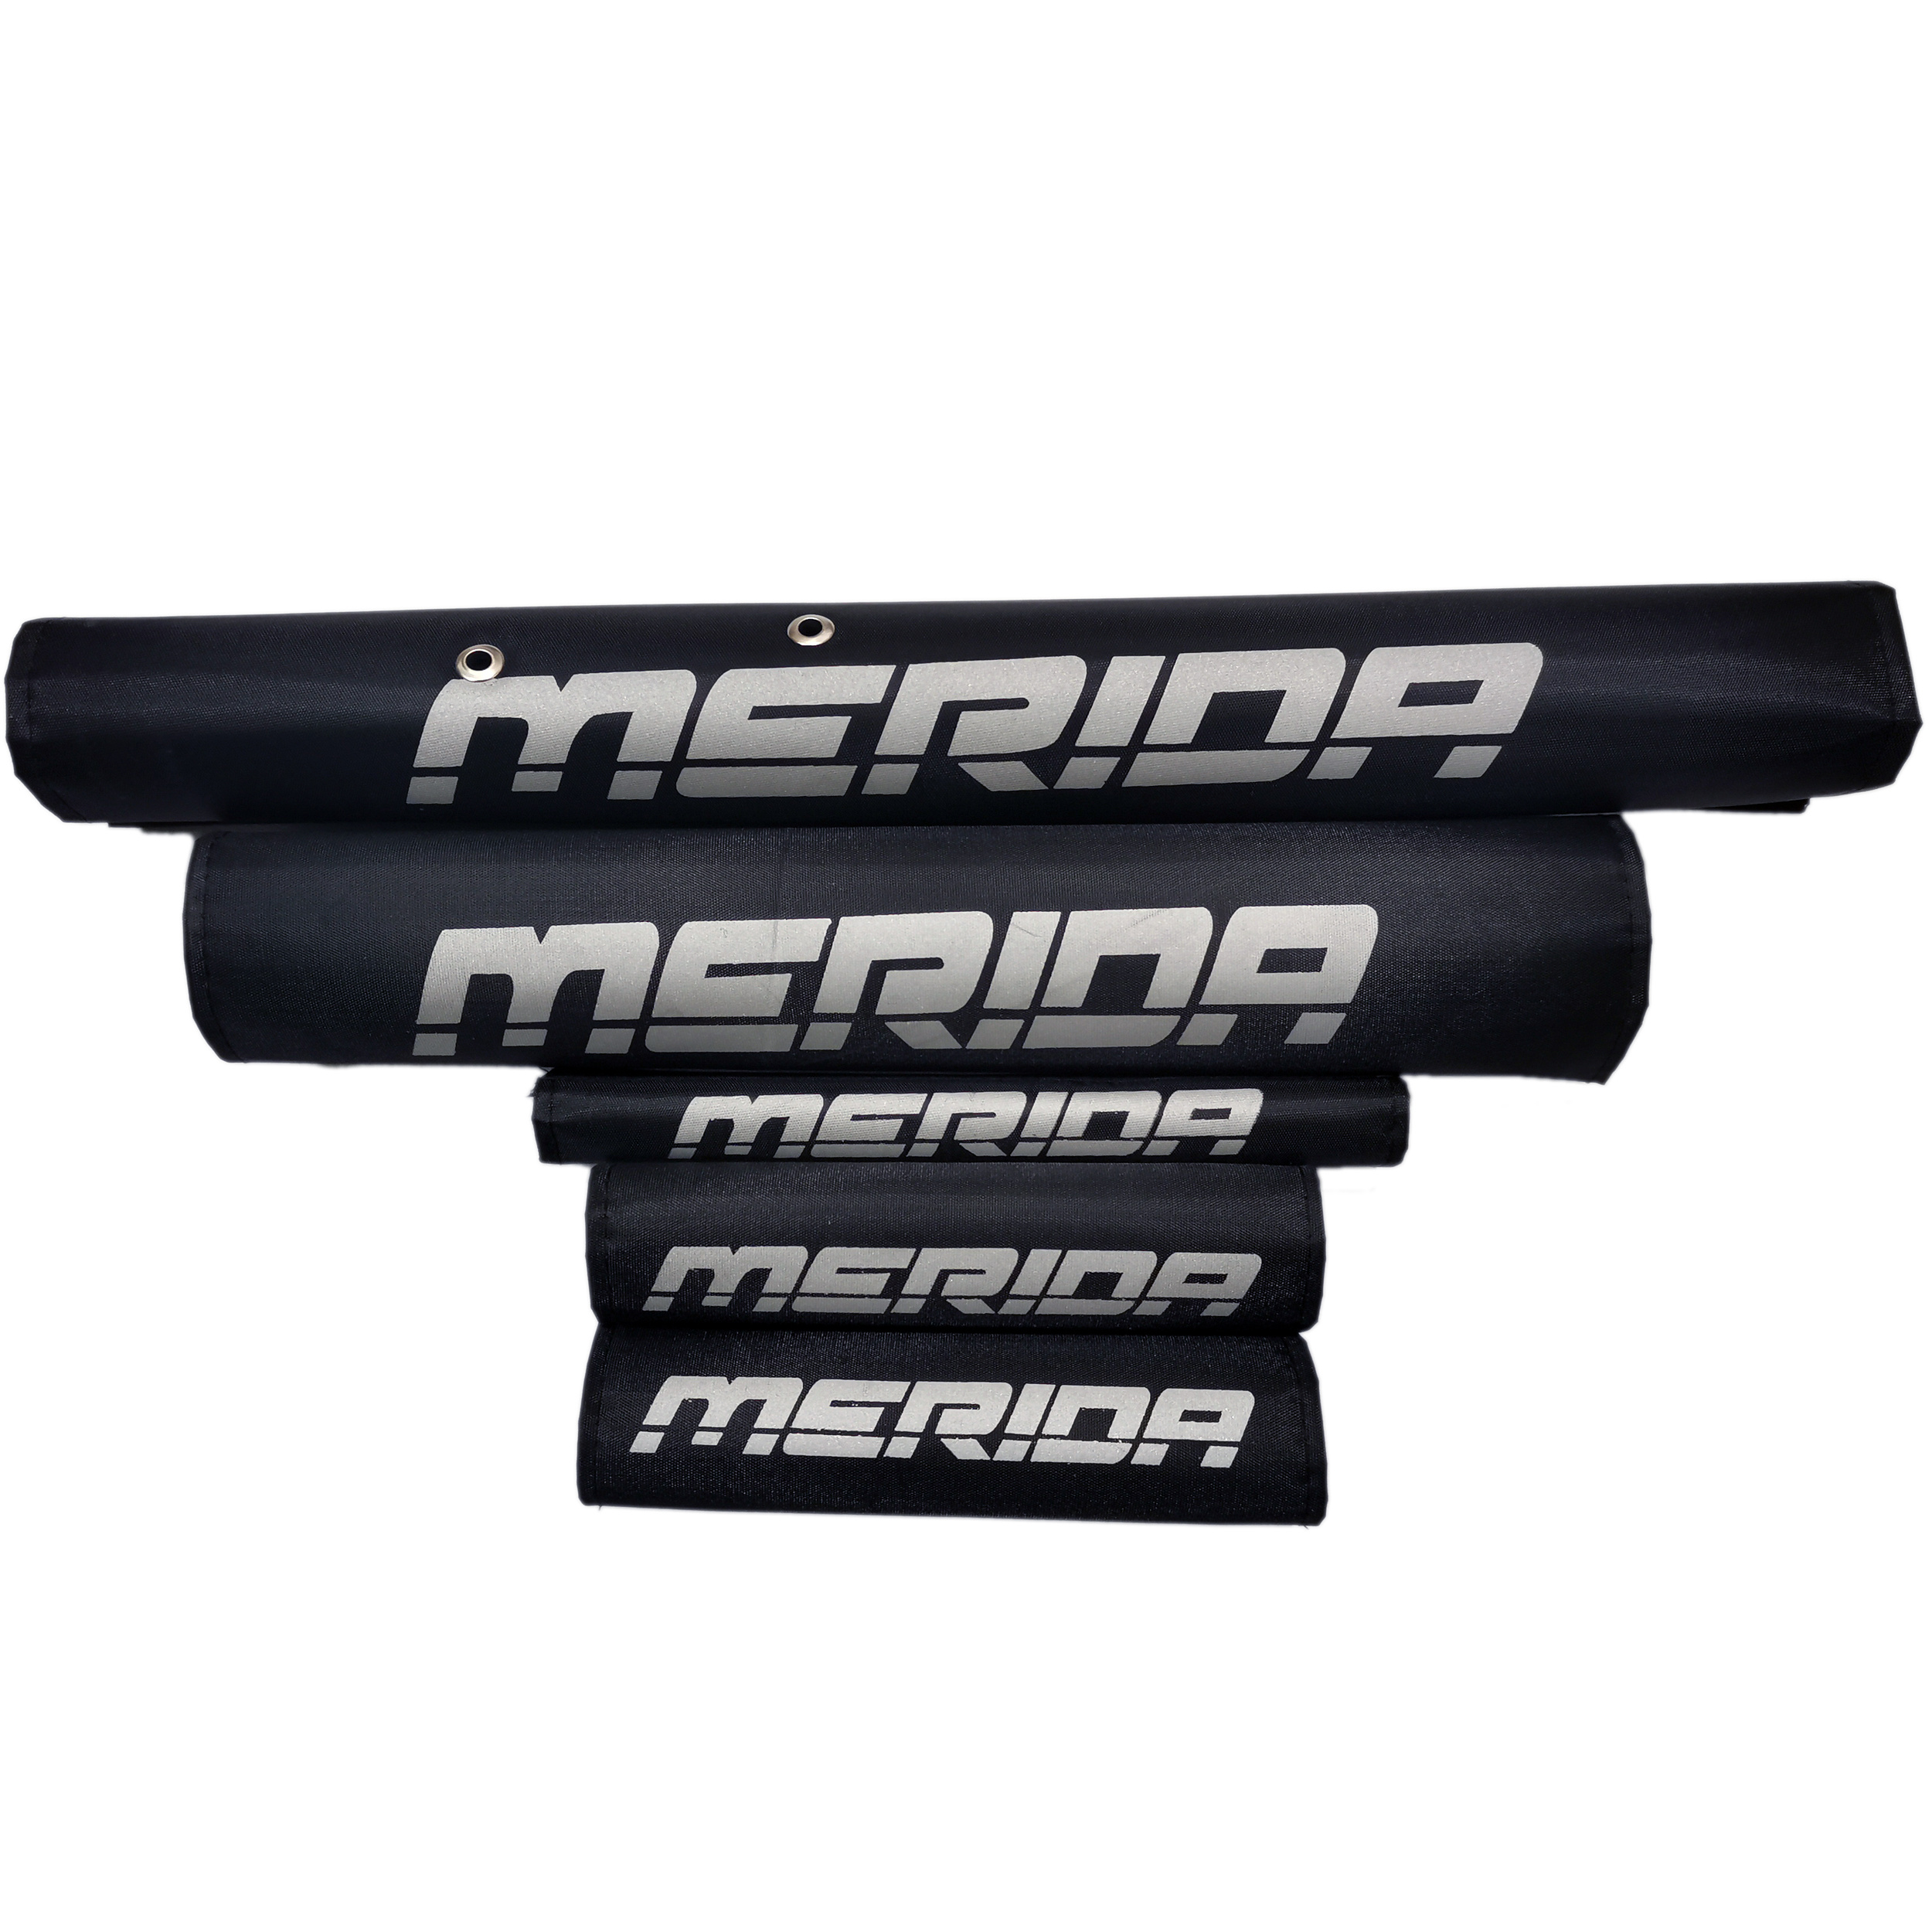 کاور تنه دوچرخه مدل merida مجموعه 5 عددی